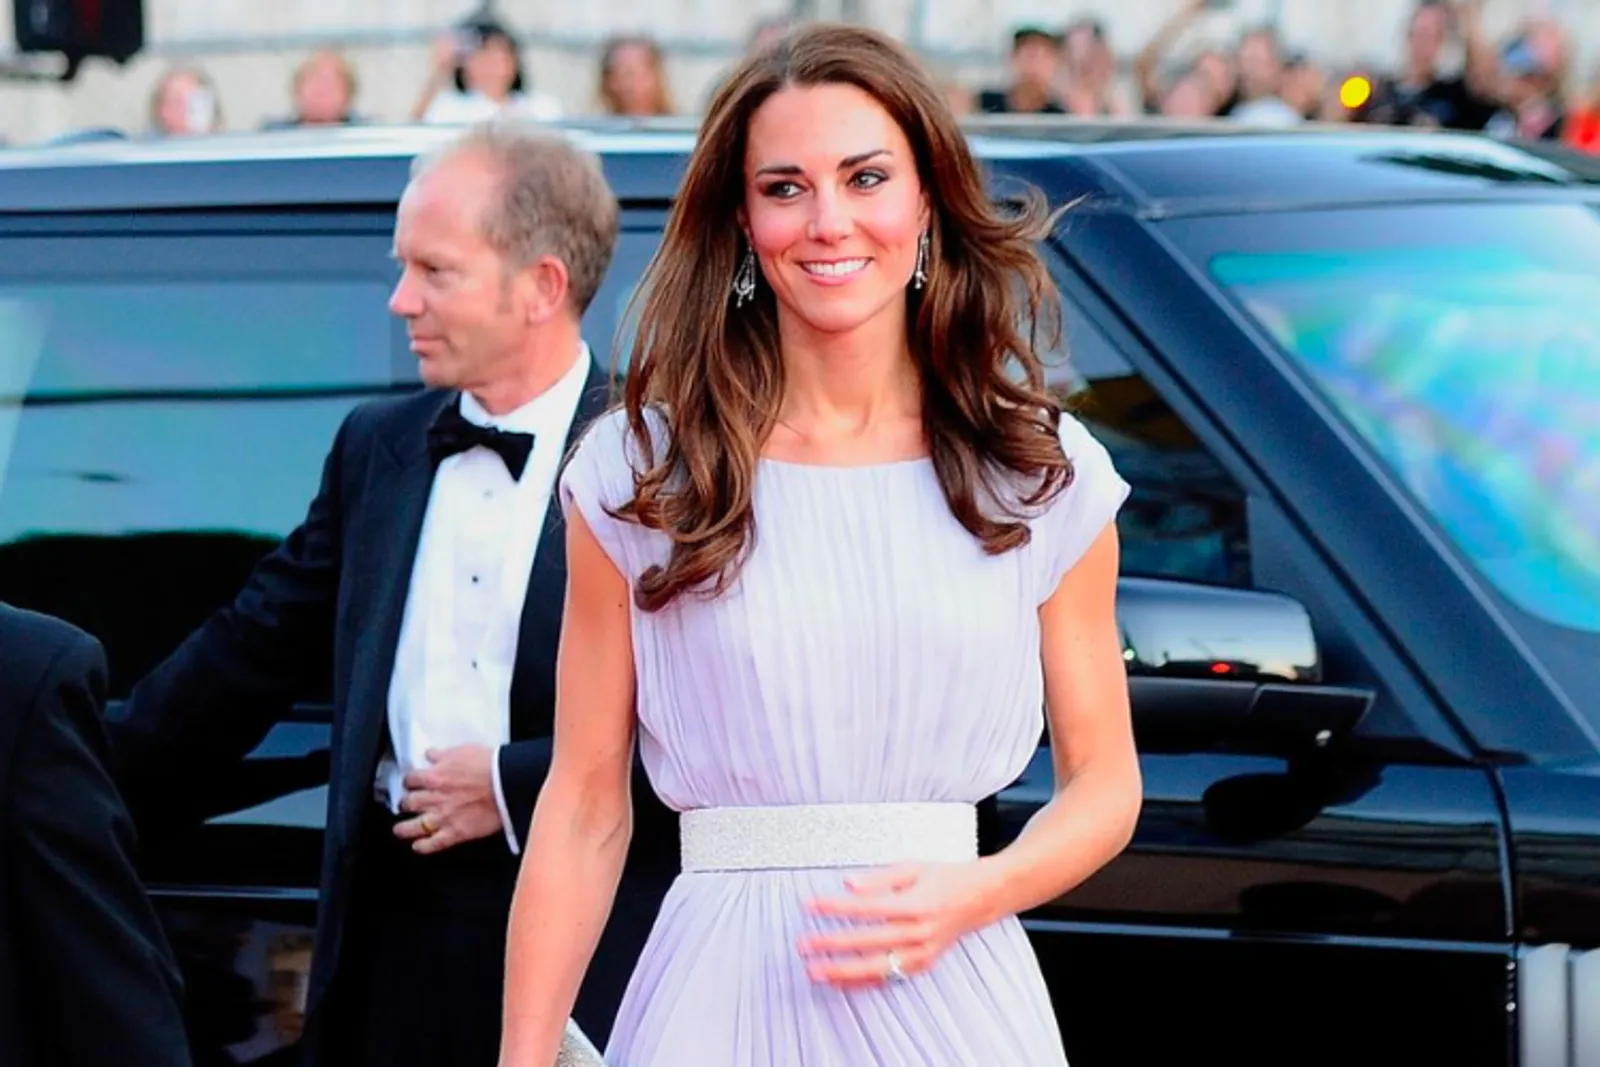 Penampilan Anggun Kate Middleton di Red Carpet Dari Tahun ke Tahun